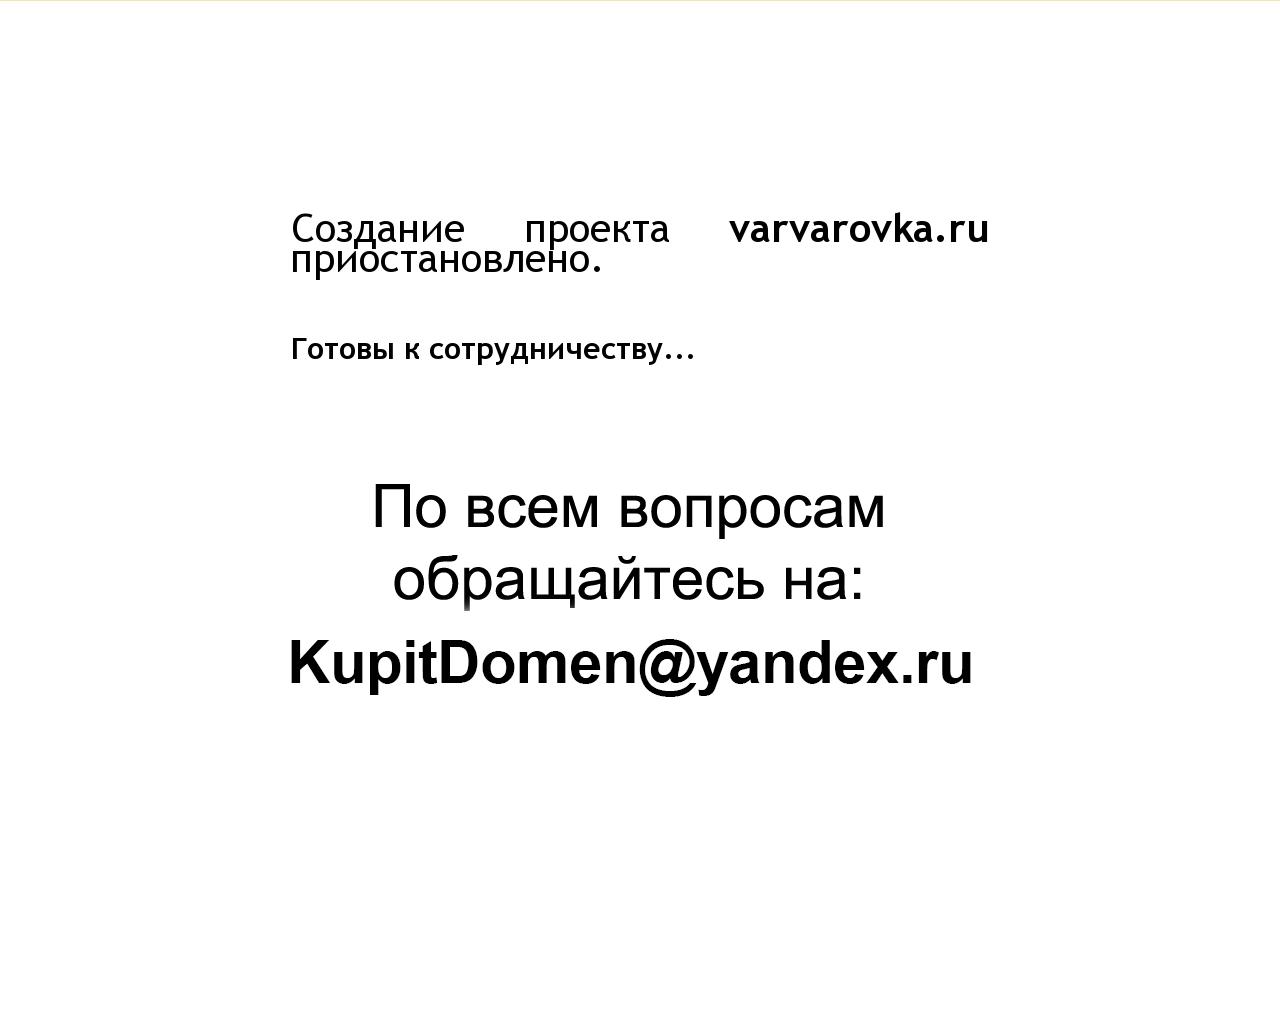 Изображение сайта varvarovka.ru в разрешении 1280x1024